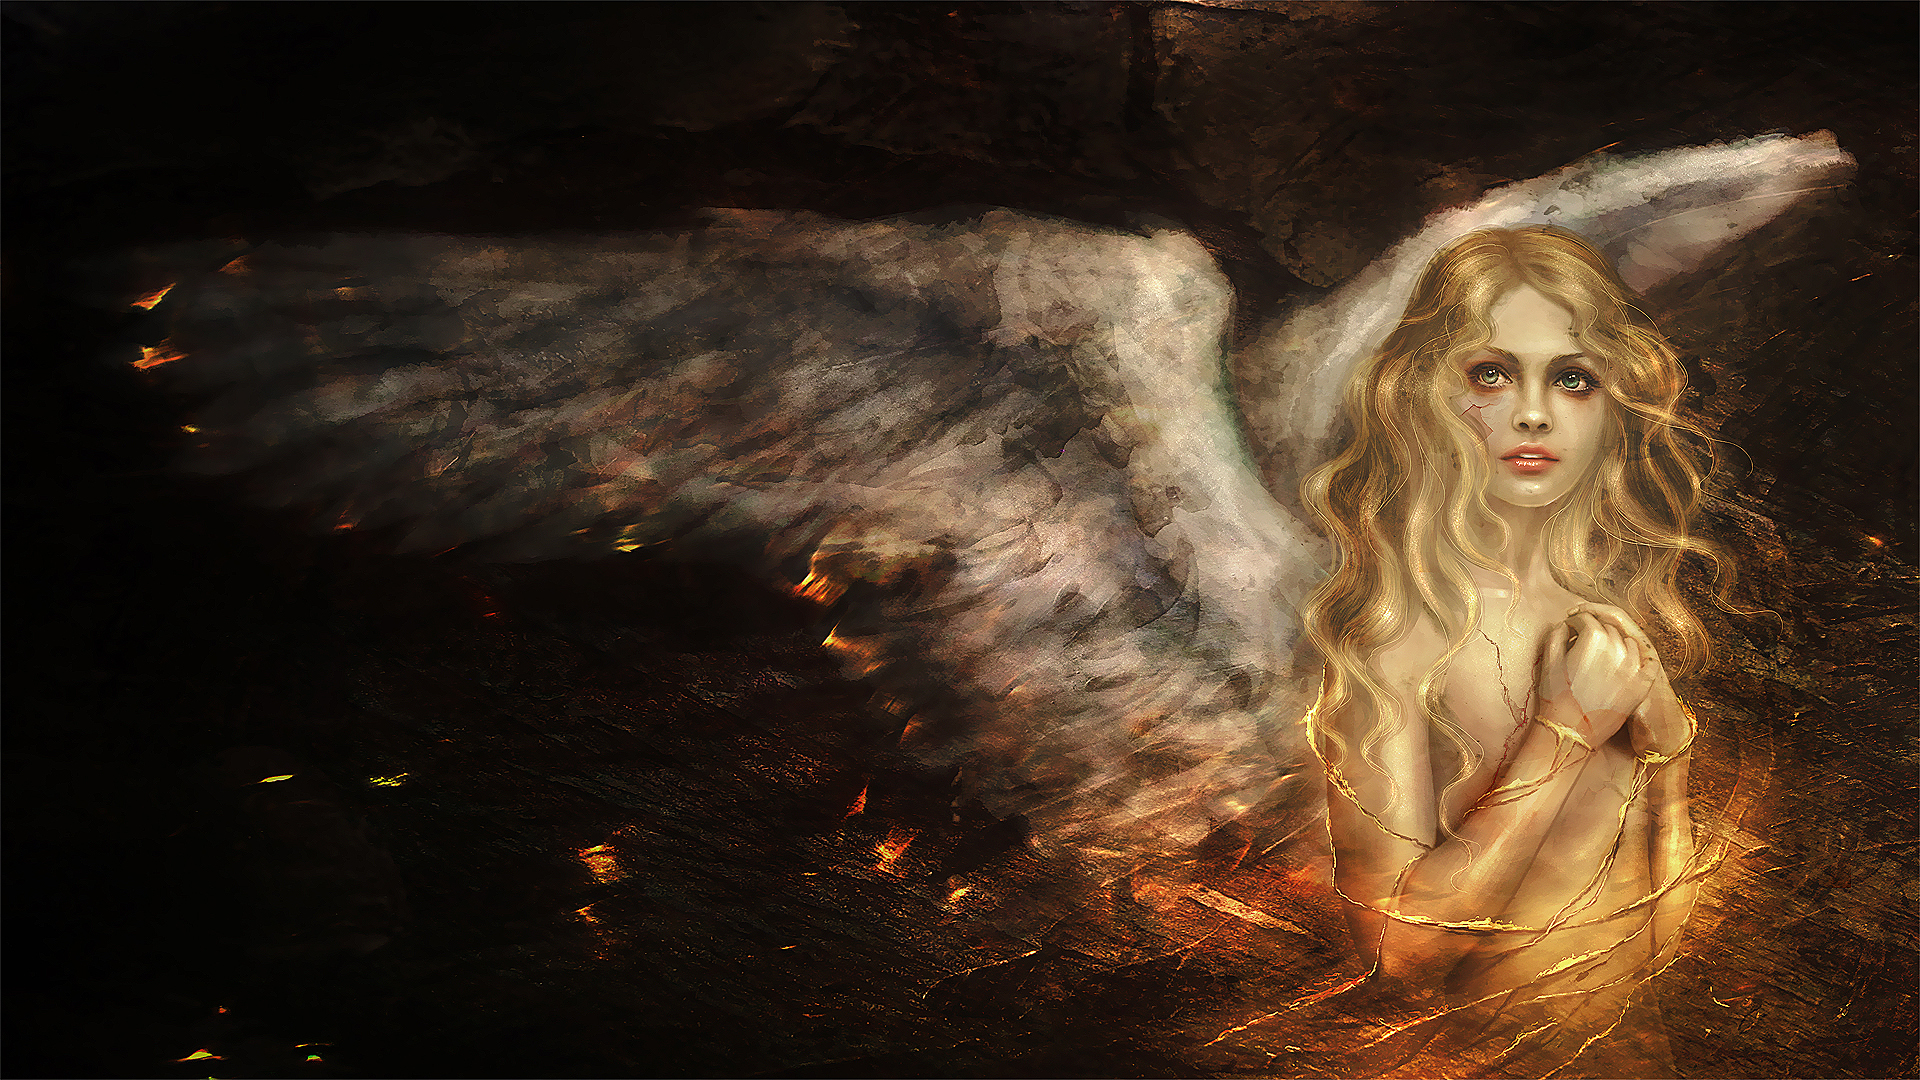 Girl Fantasy Art Warrior Angel - HD Wallpaper 